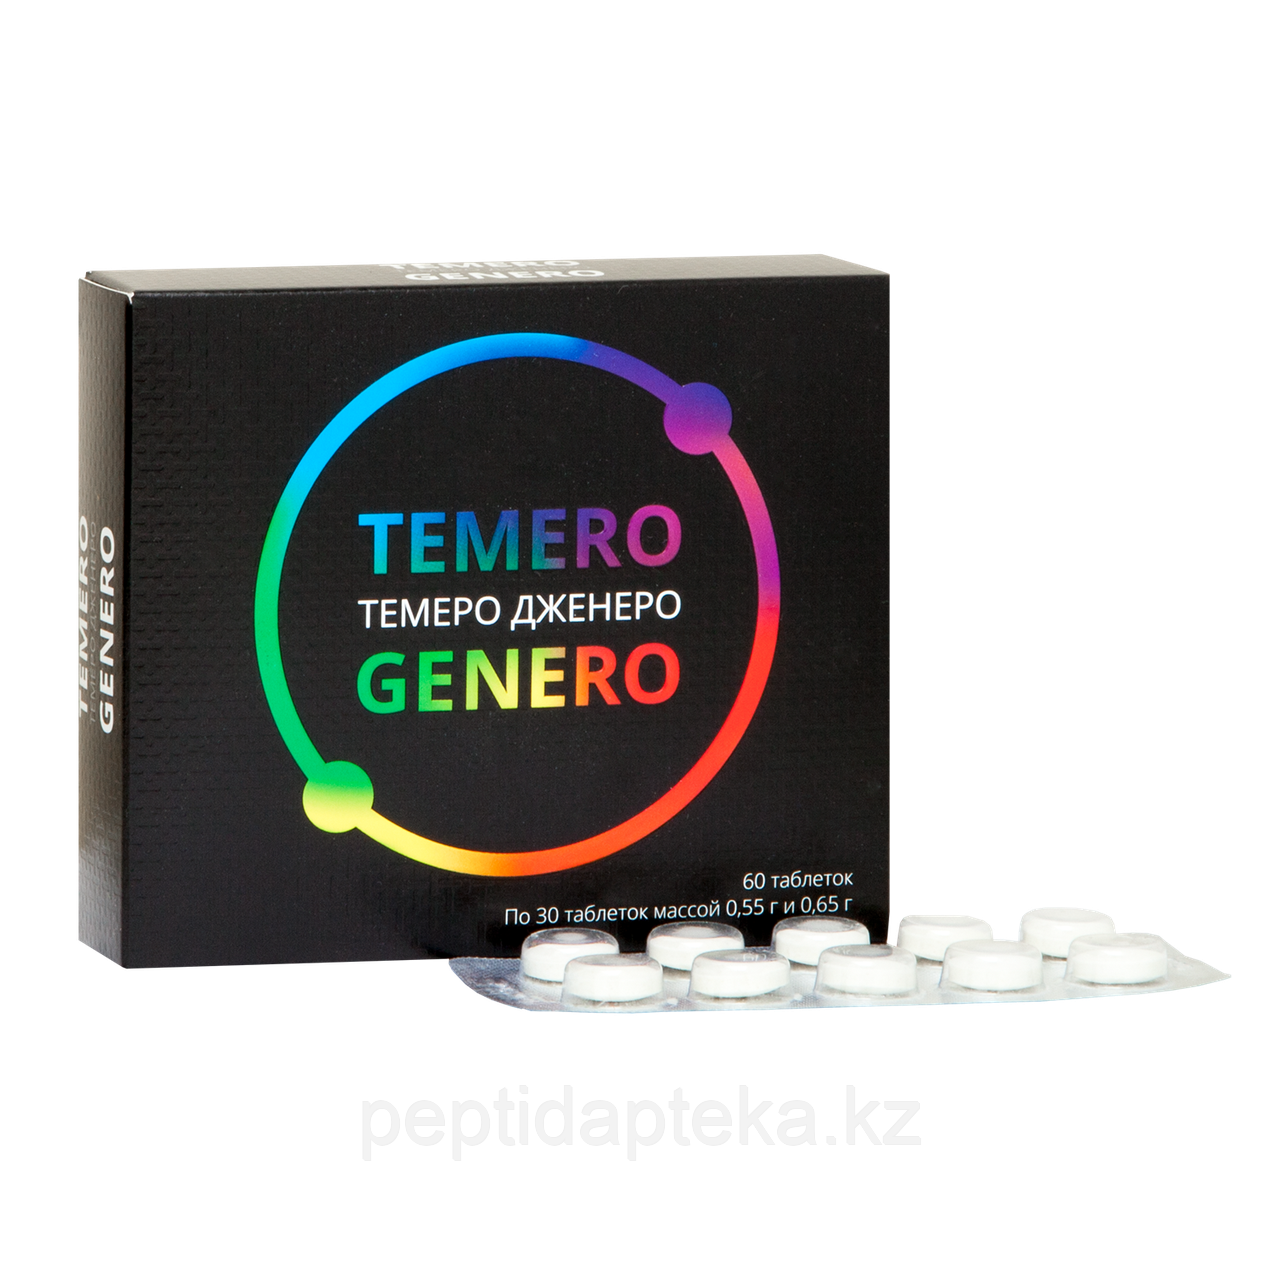 ТЕМЕРО ДЖЕНЕРО - комплекс аминокислот